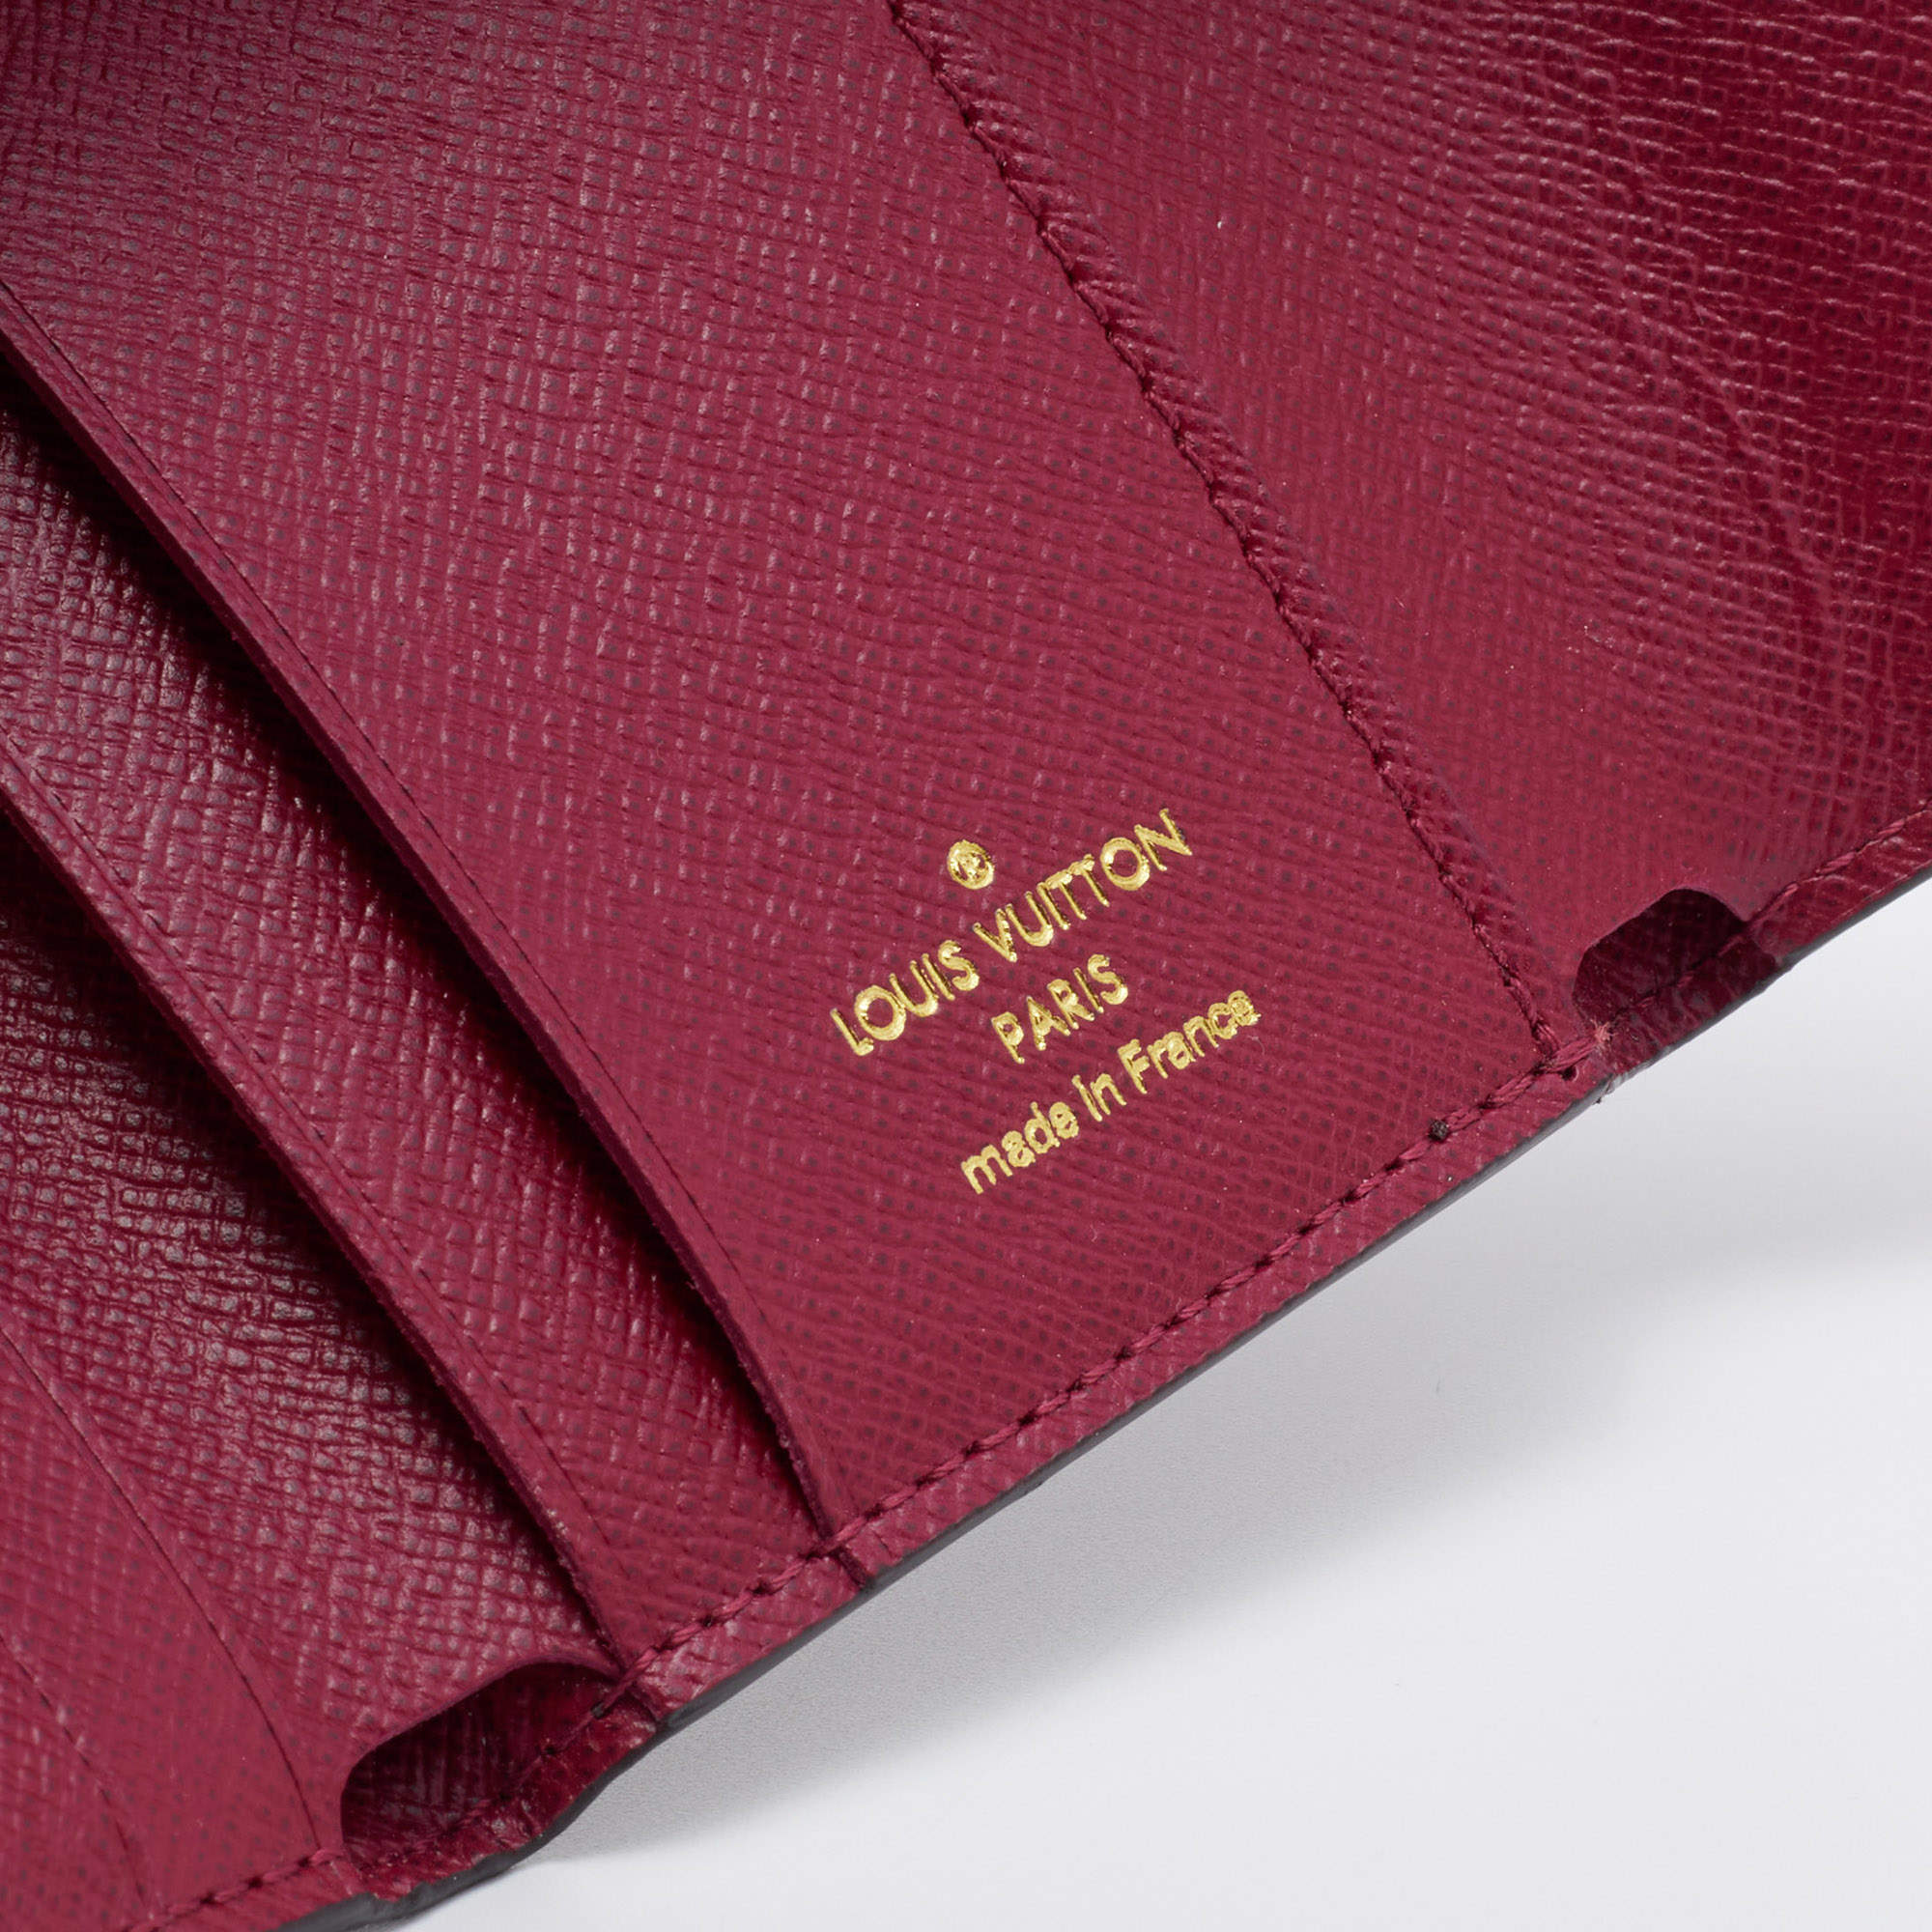 Louis Vuitton 2018 Monogram Zoé Fuchsia Wallet